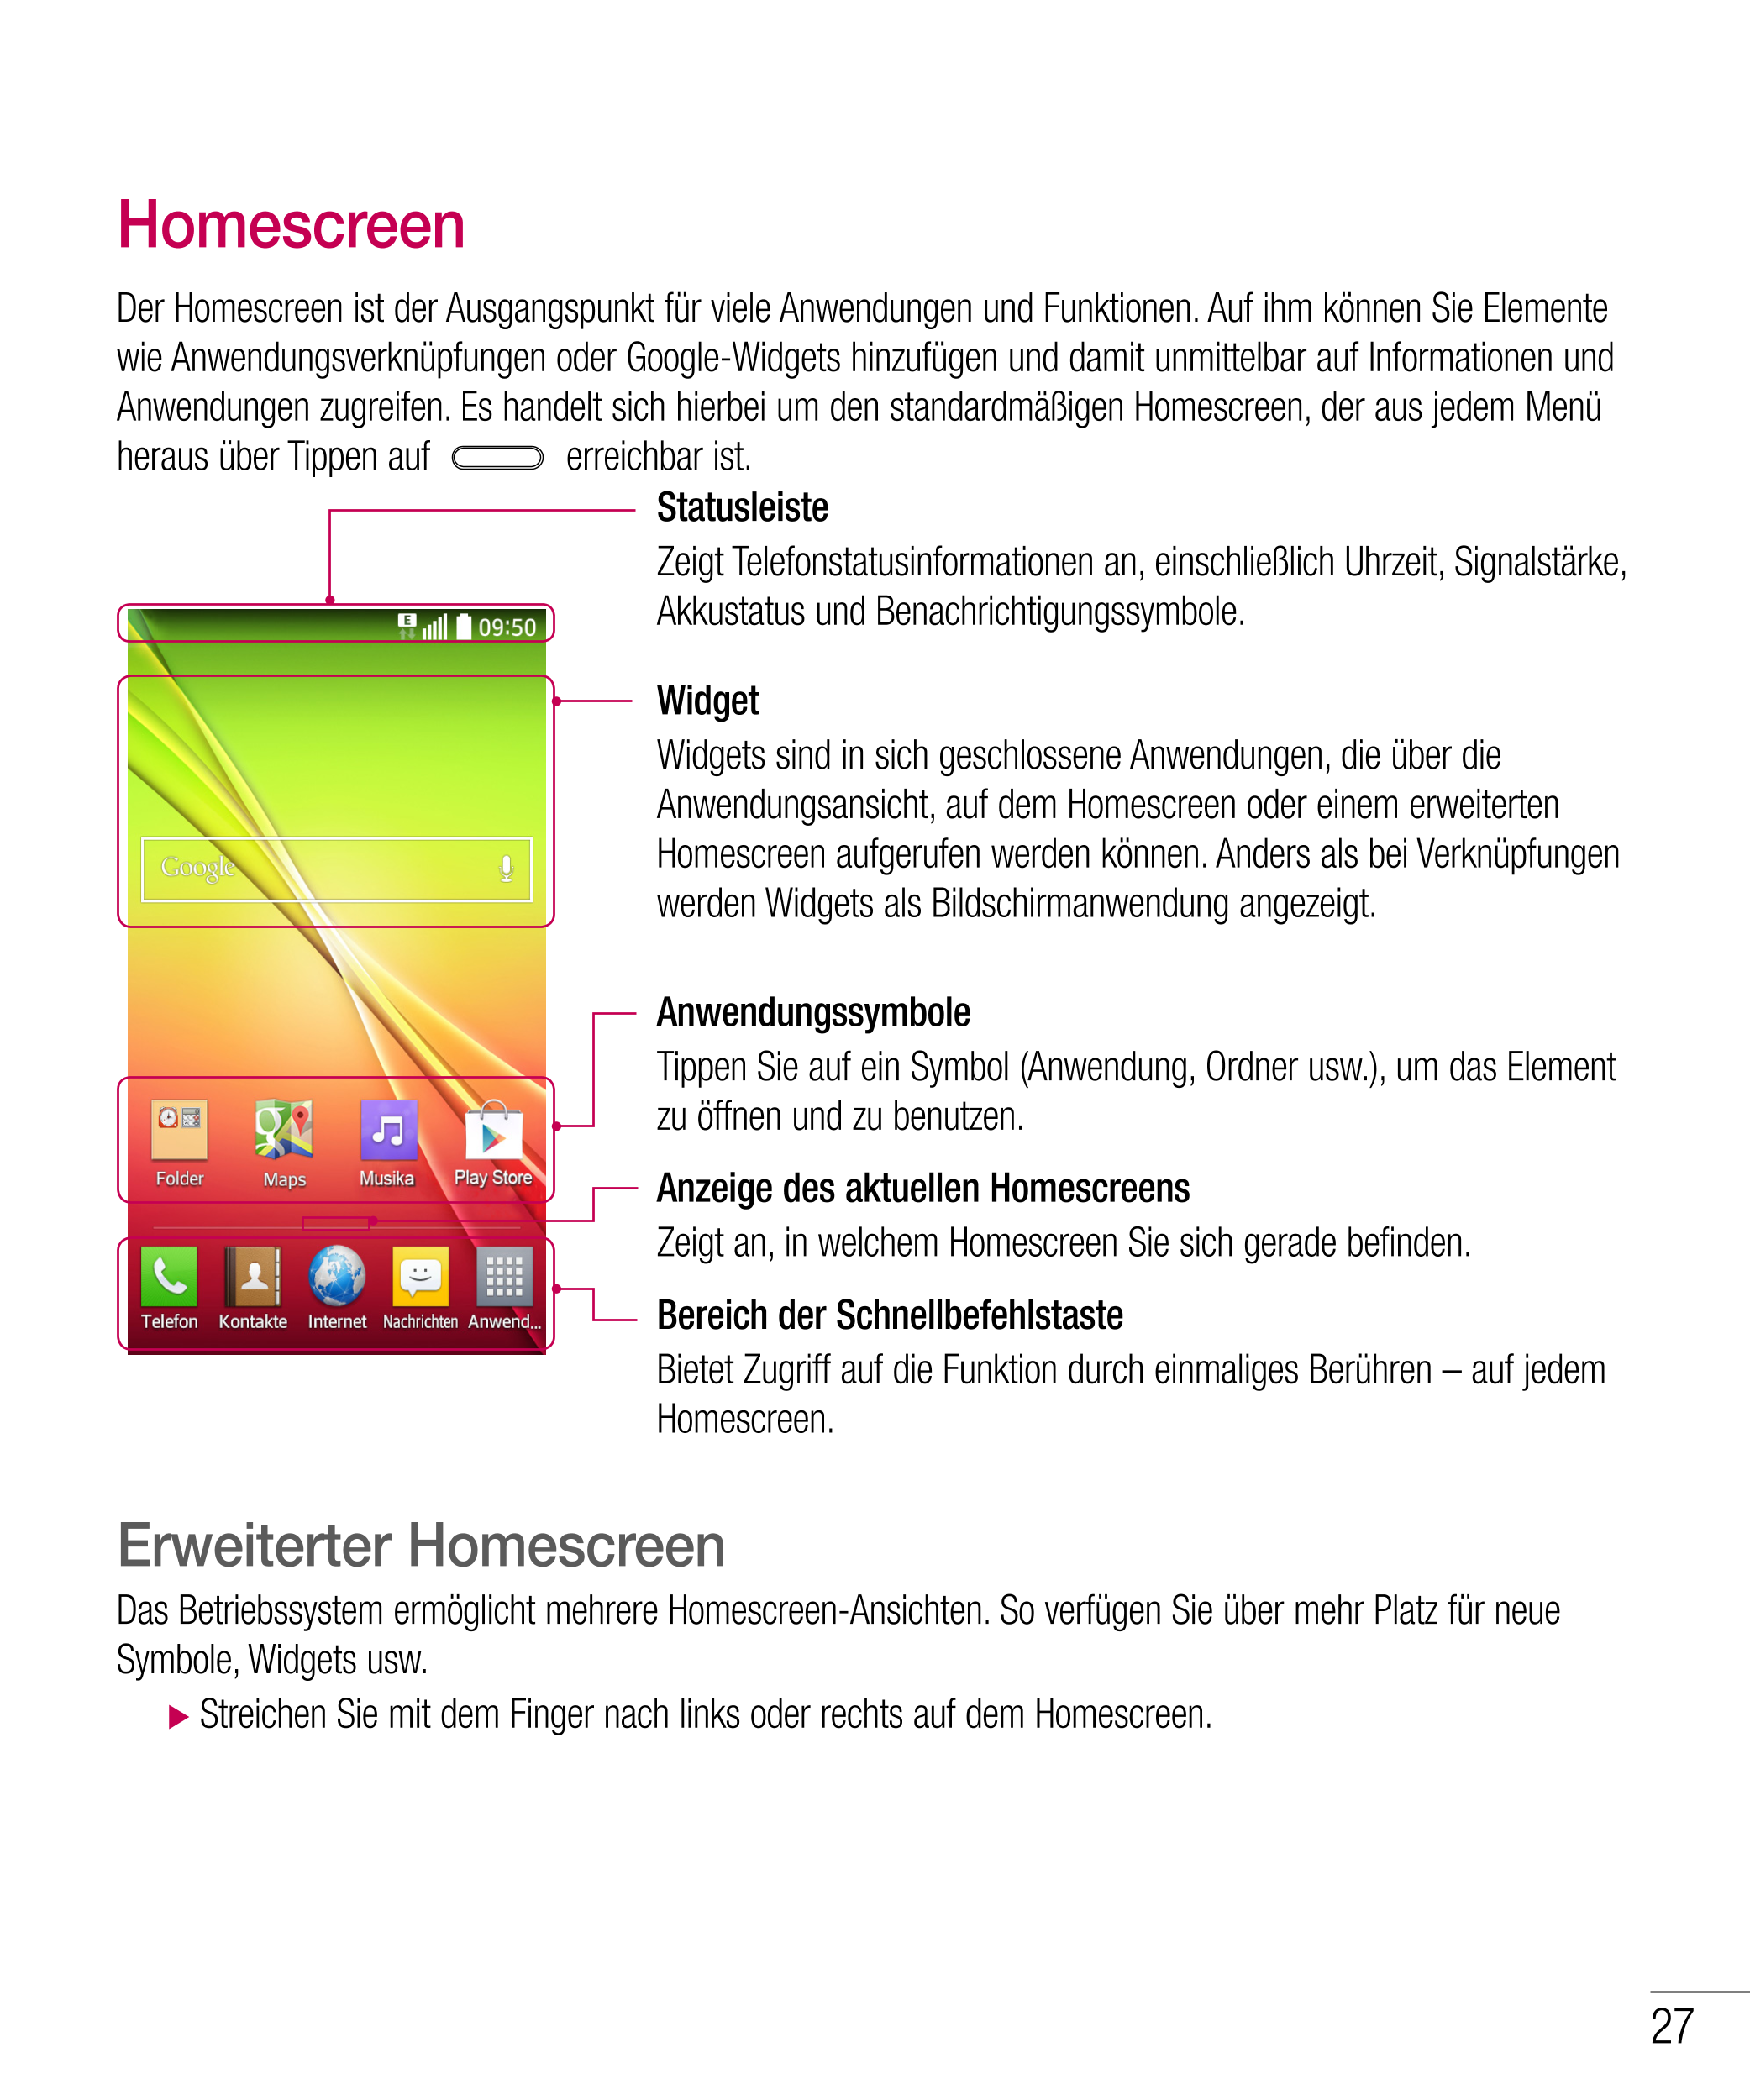 Homescreen
Der Homescreen ist der Ausgangspunkt für viele Anwendungen und Funktionen. Auf ihm können Sie Elemente 
wie Anwendung